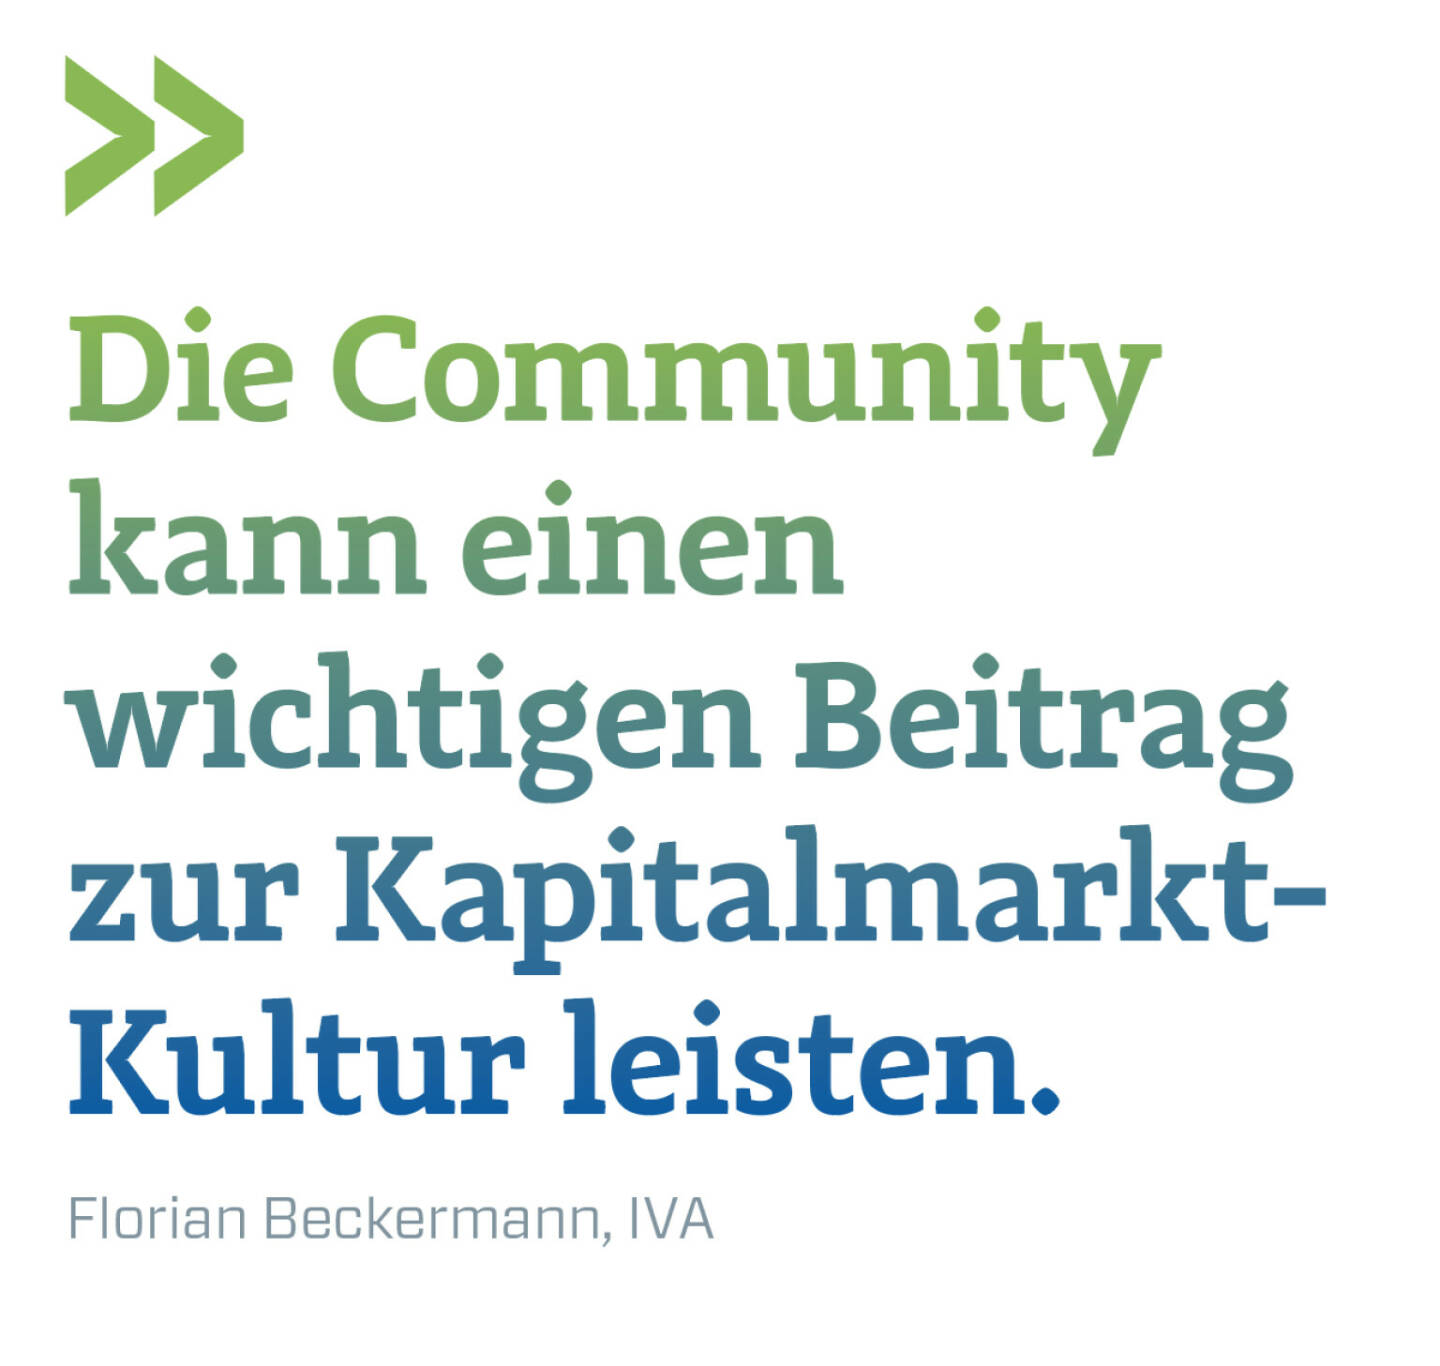 Die Community kann einen wichtigen Beitrag zur Kapitalmarkt-Kultur leisten.
Florian Beckermann, IVA